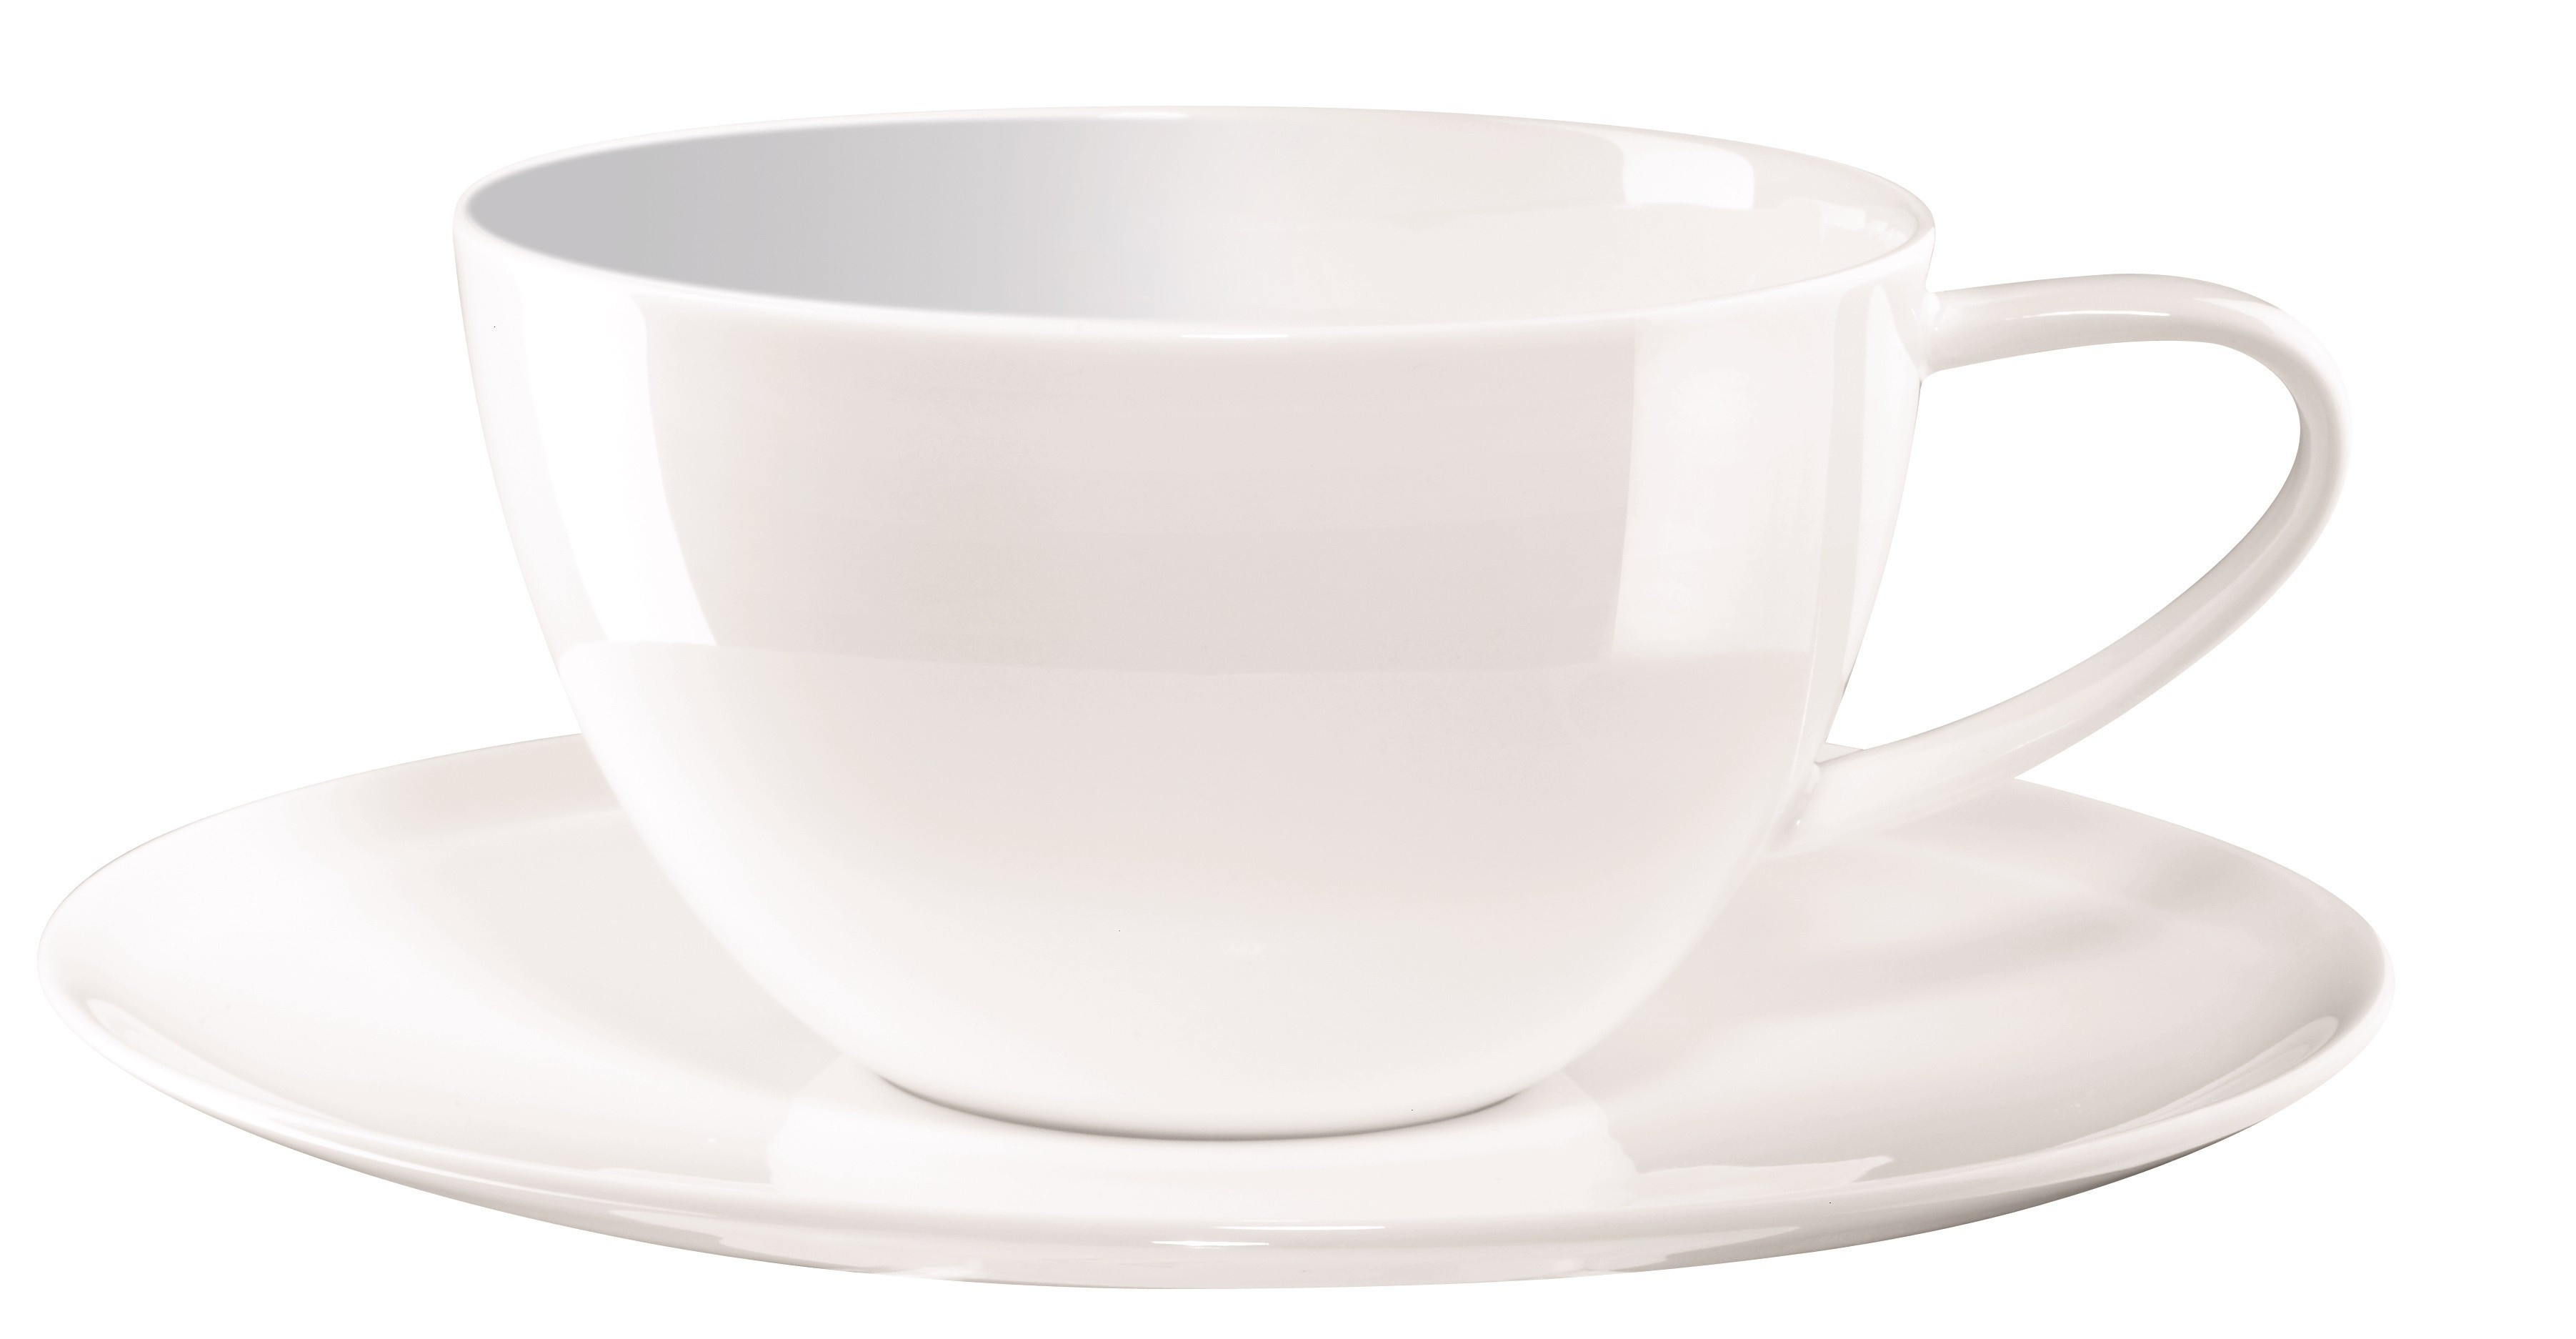 tasse à thé avec soucoupe 35cl en porcelaine, une ligne très raffinée